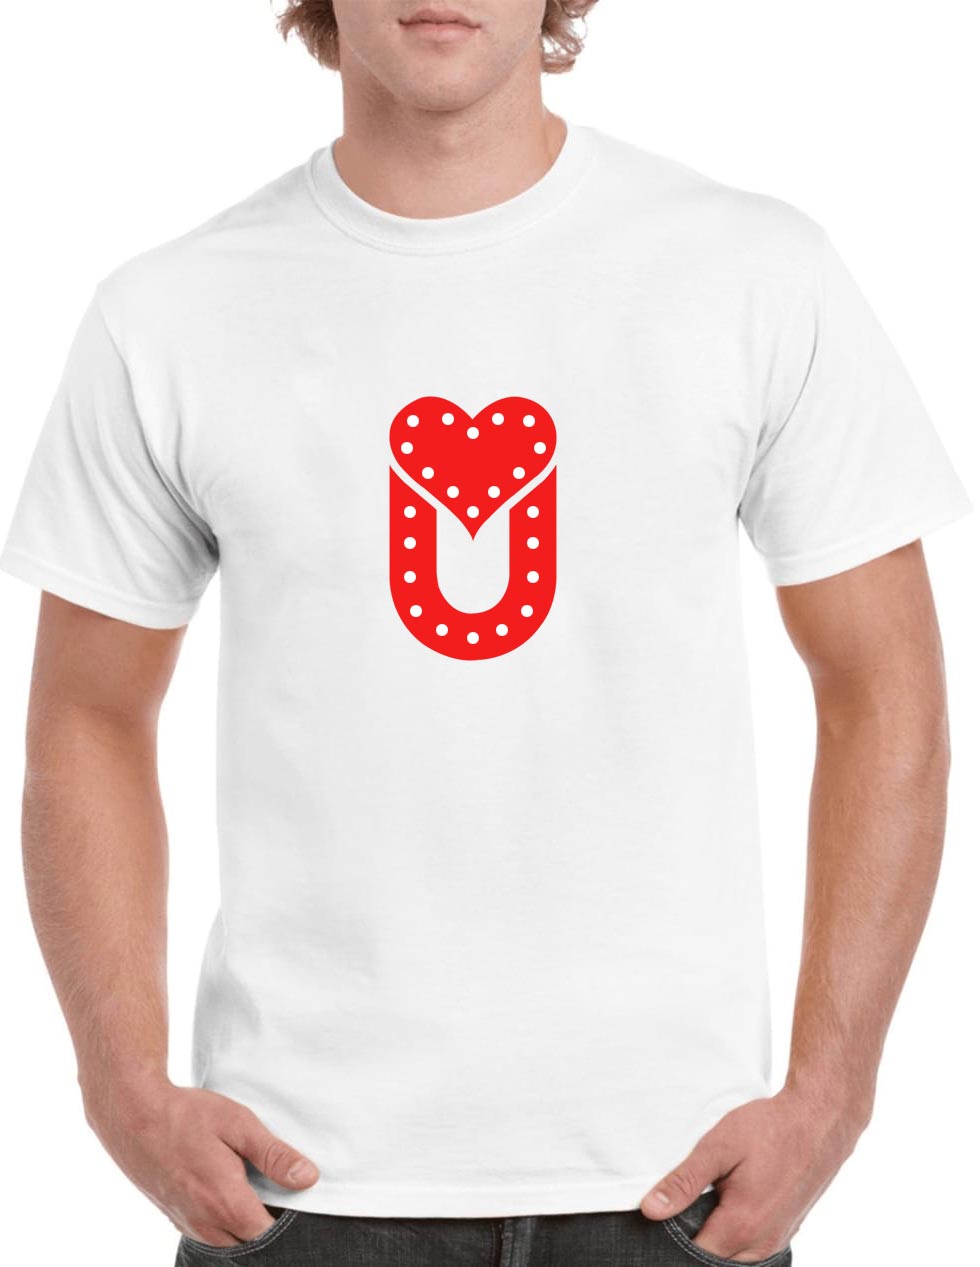 LOVE-U-LED-T-shirt